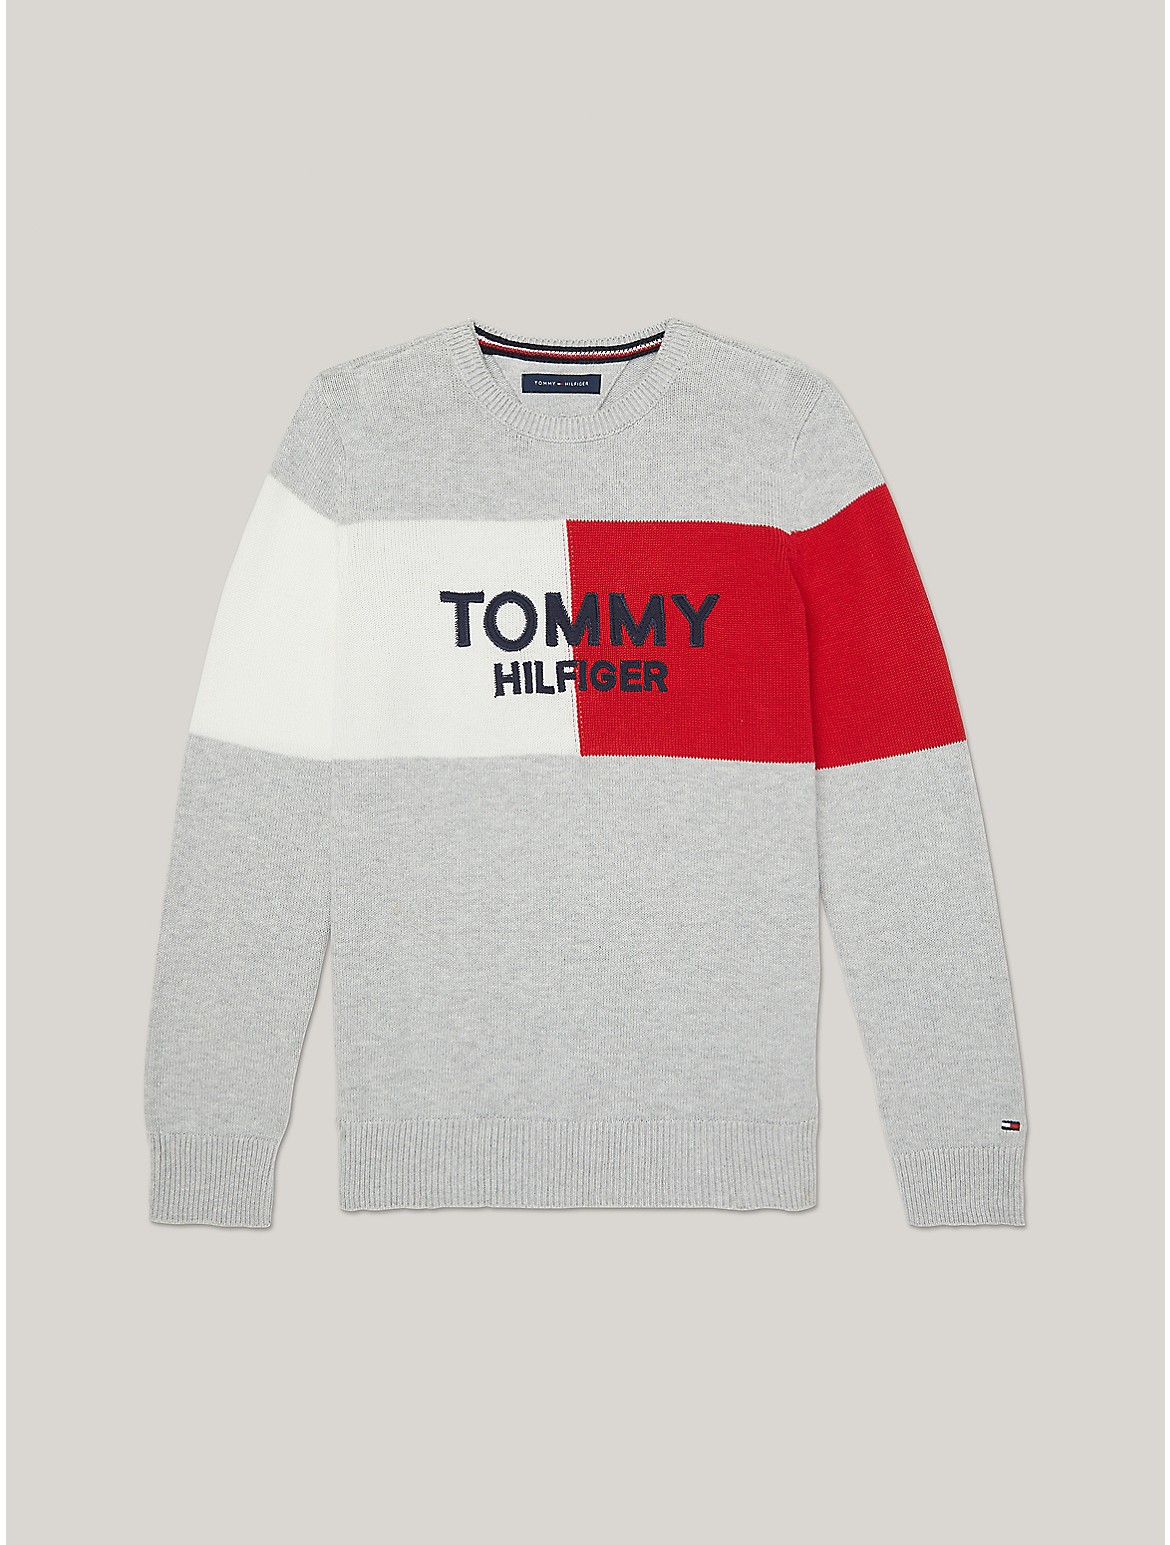 Tommy Hilfiger Boys' Flag Logo Sweater